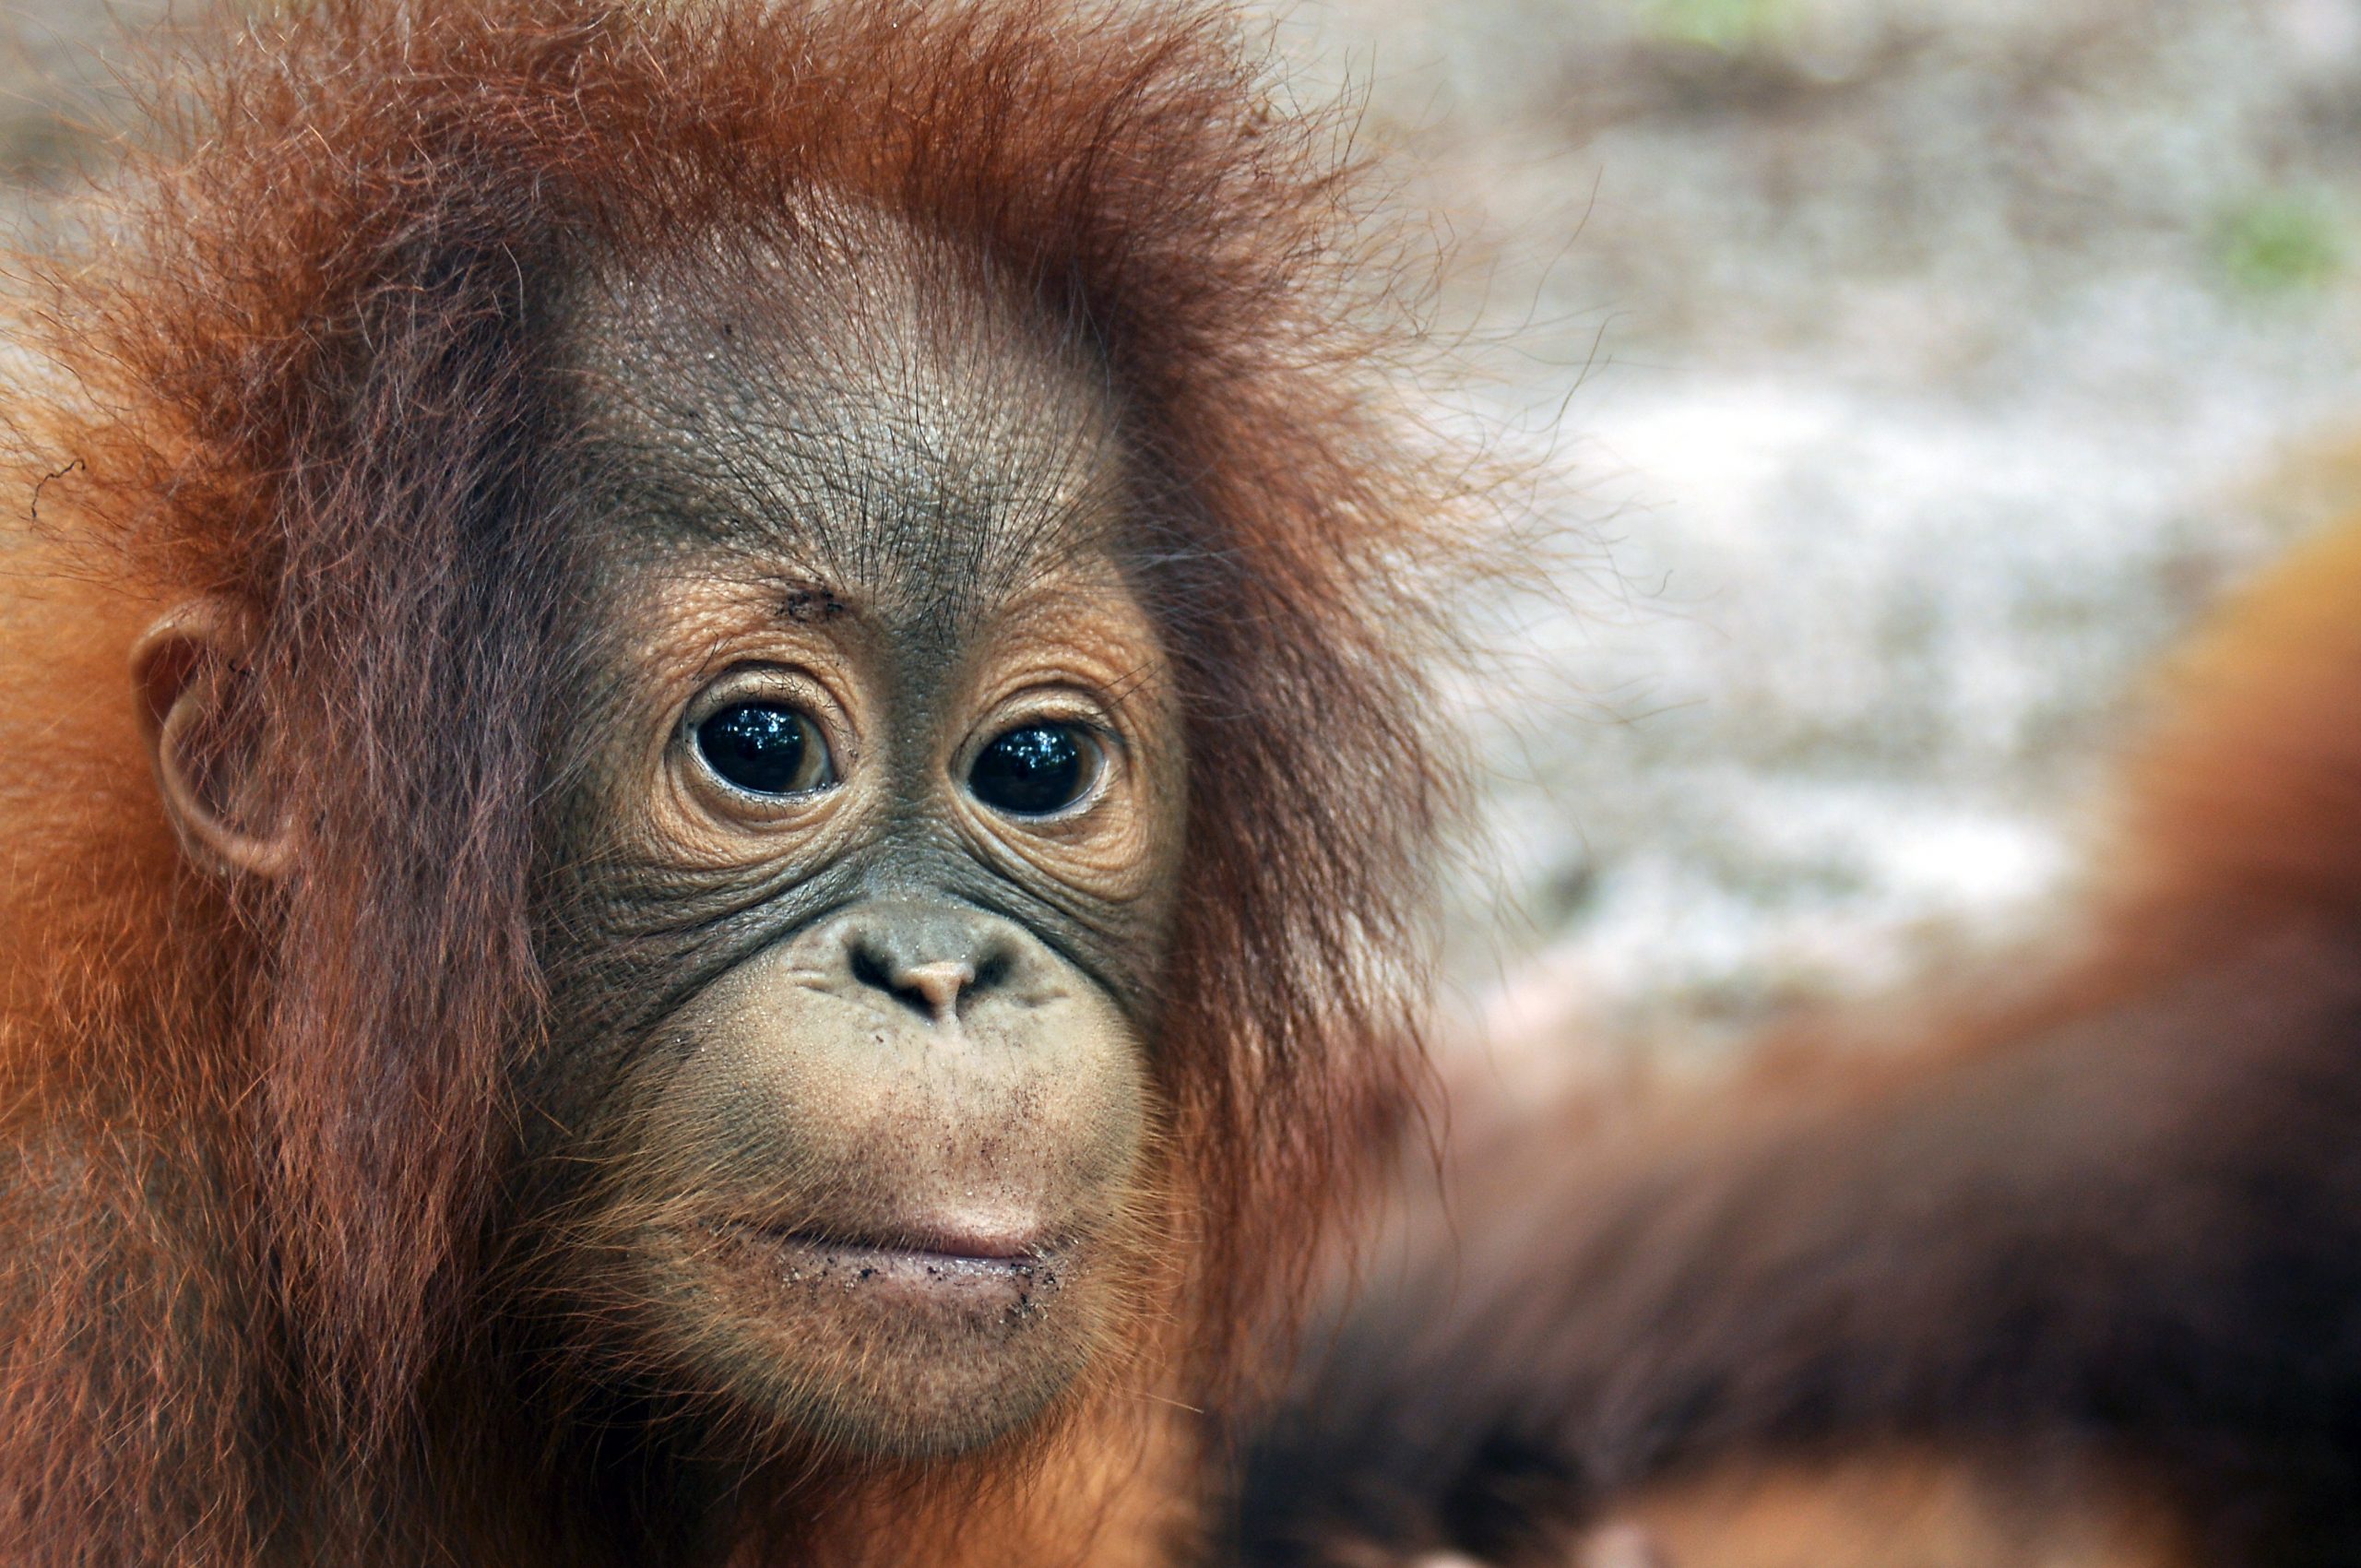 Ny Orangutangen er nu kritisk truet | Globalnyt